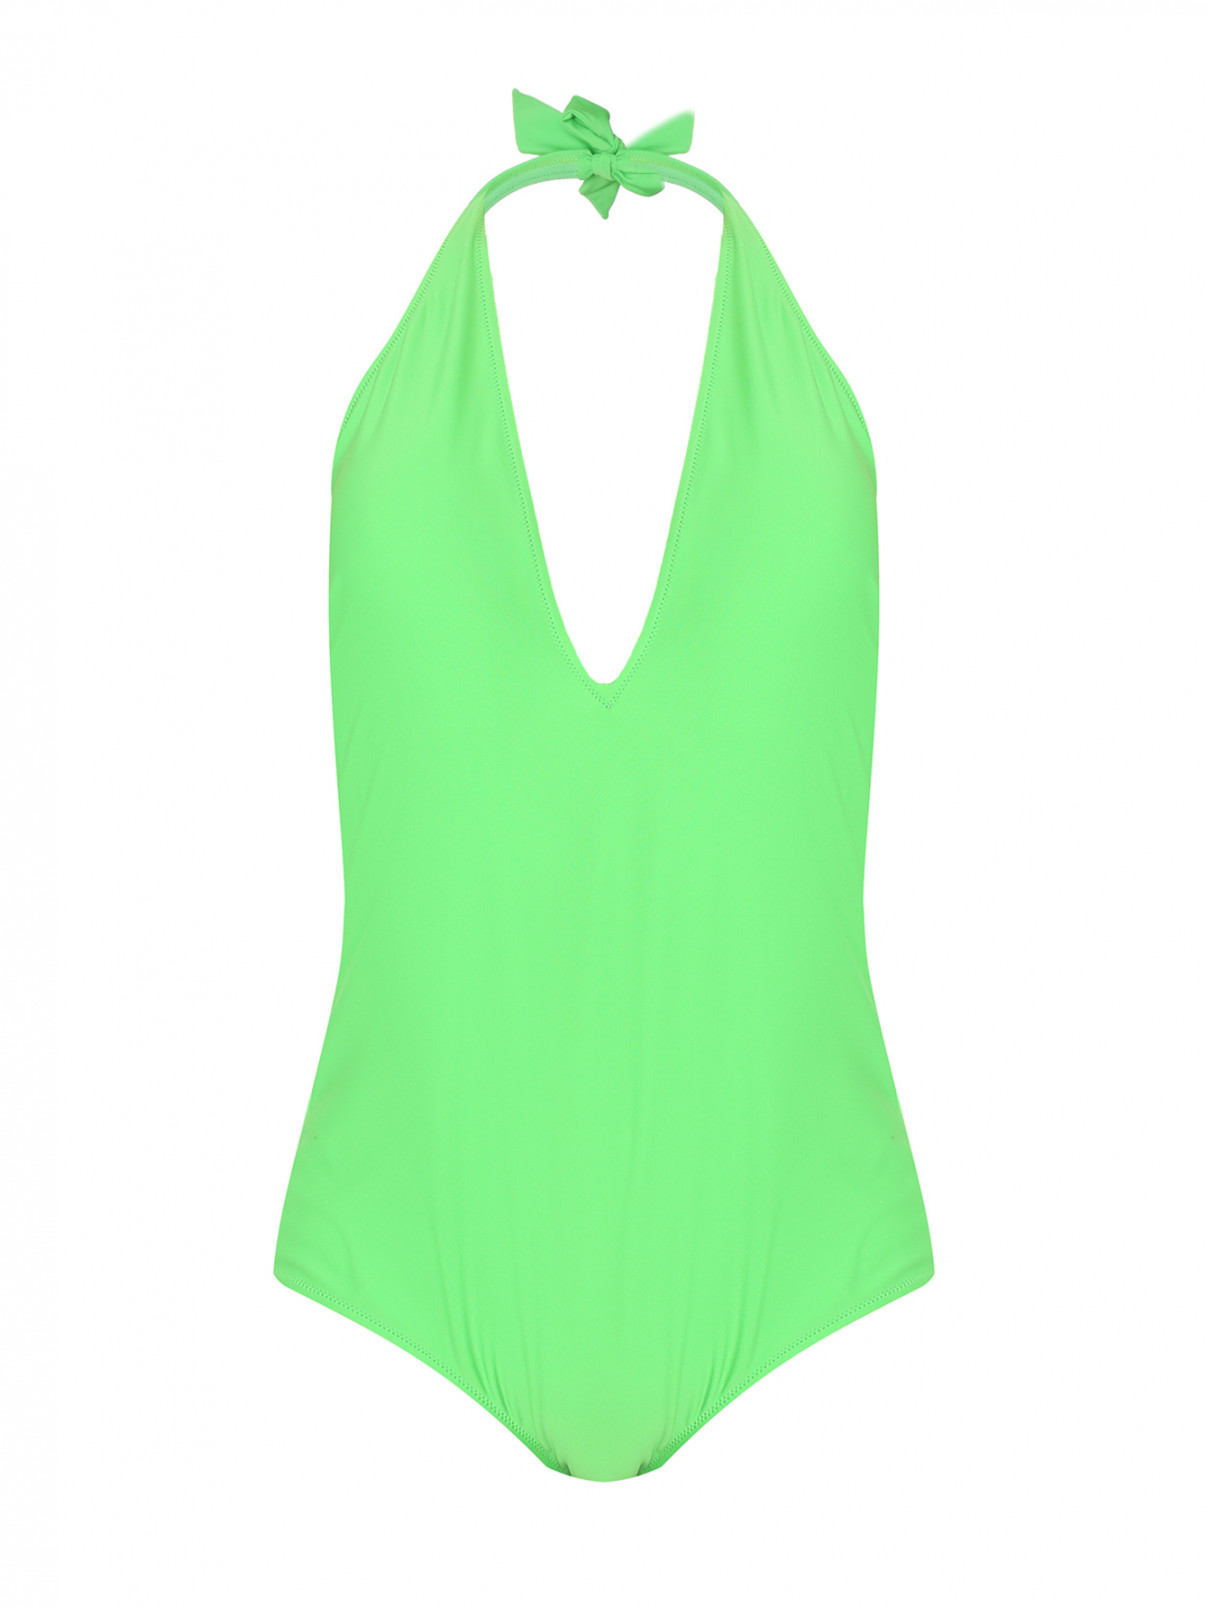 Купальник слитный Marina Rinaldi  –  Общий вид  – Цвет:  Зеленый